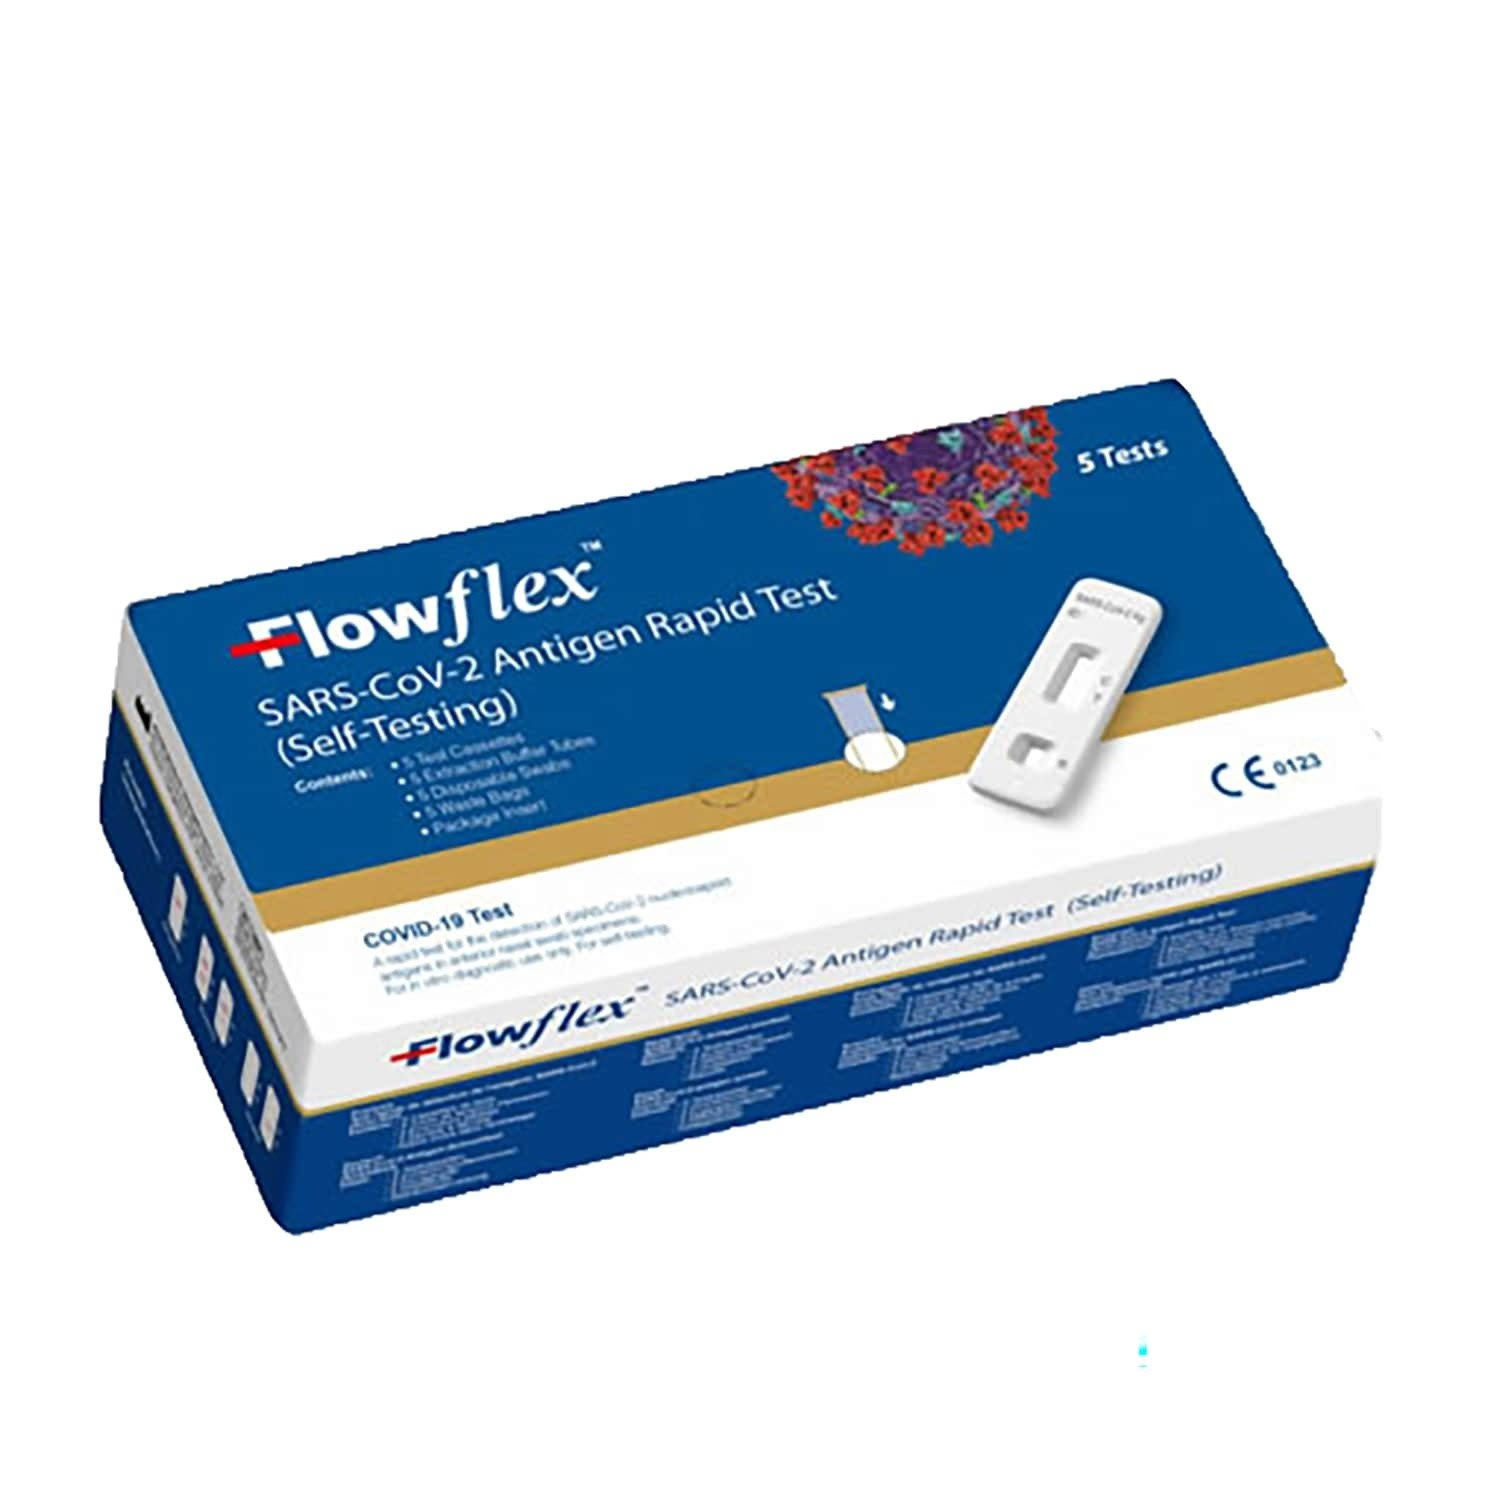 Flowflex - Antigen SARS-Covid-19 Rapid Test, 5 Tests